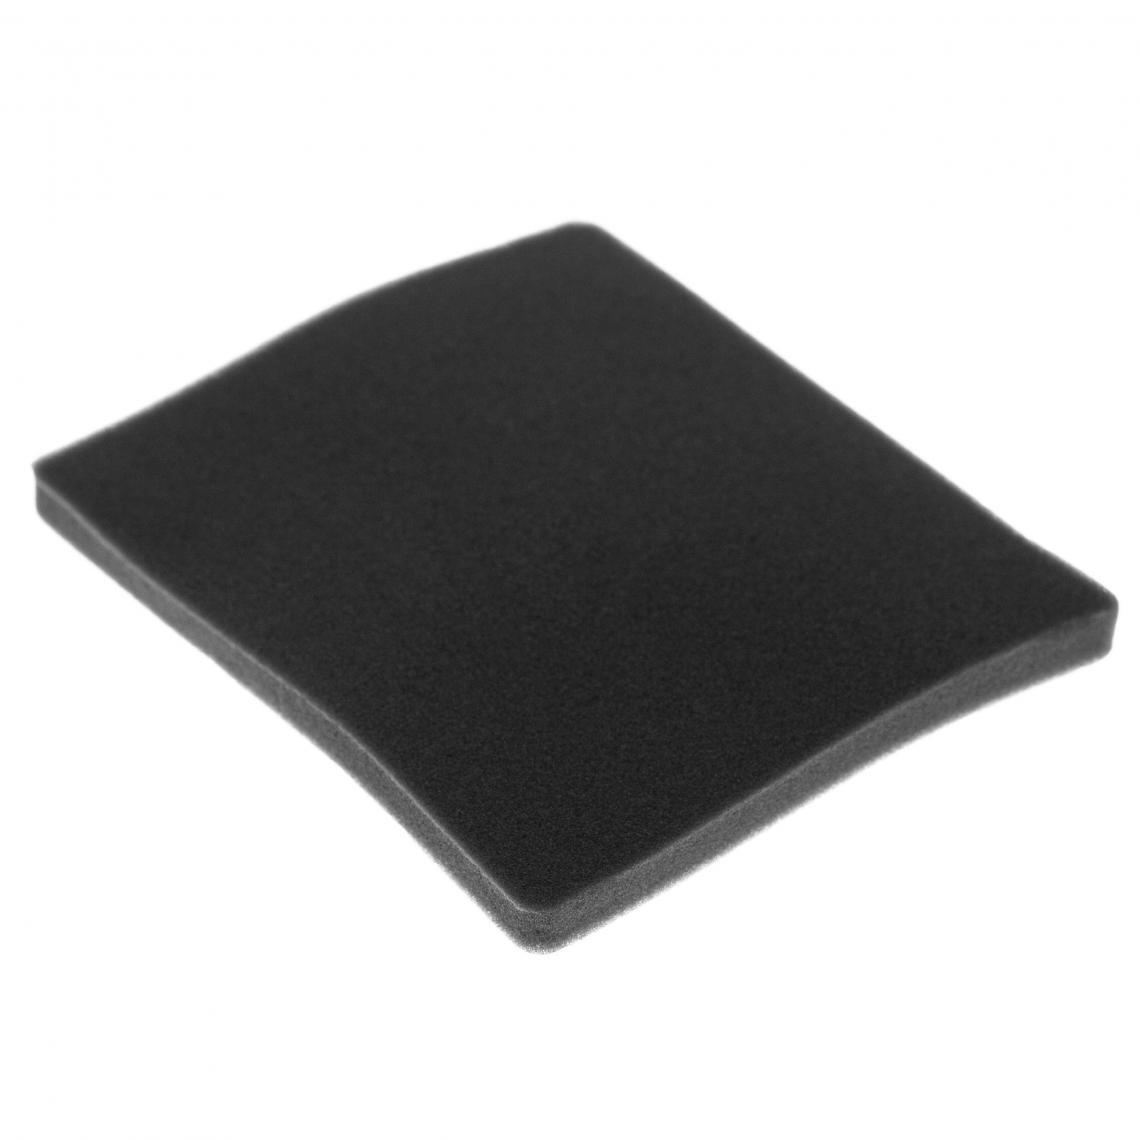 Vhbw - vhbw Filtre compatible avec Electrolux ZCX6200 (910286608) aspirateur - filtre de sortie d'air (filtre éponge), noir - Accessoire entretien des sols